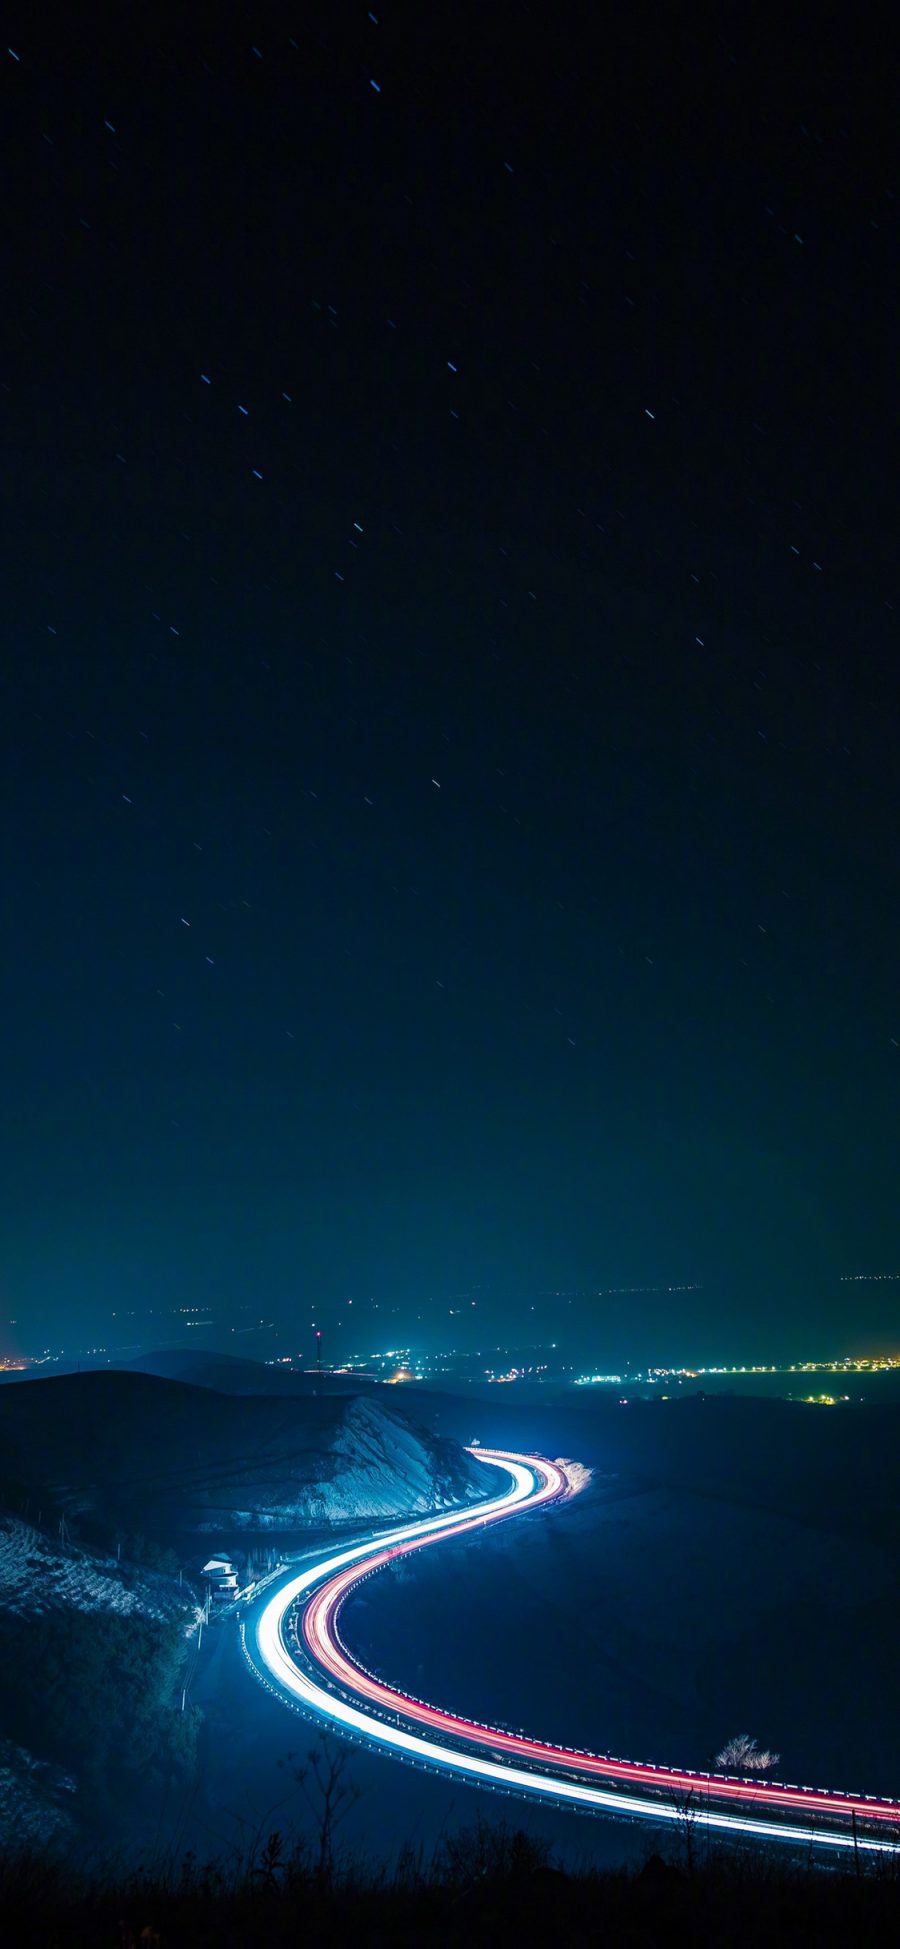 [2436×1125]夜晚 星空 道路 曲线 蜿蜒 山 苹果手机壁纸图片